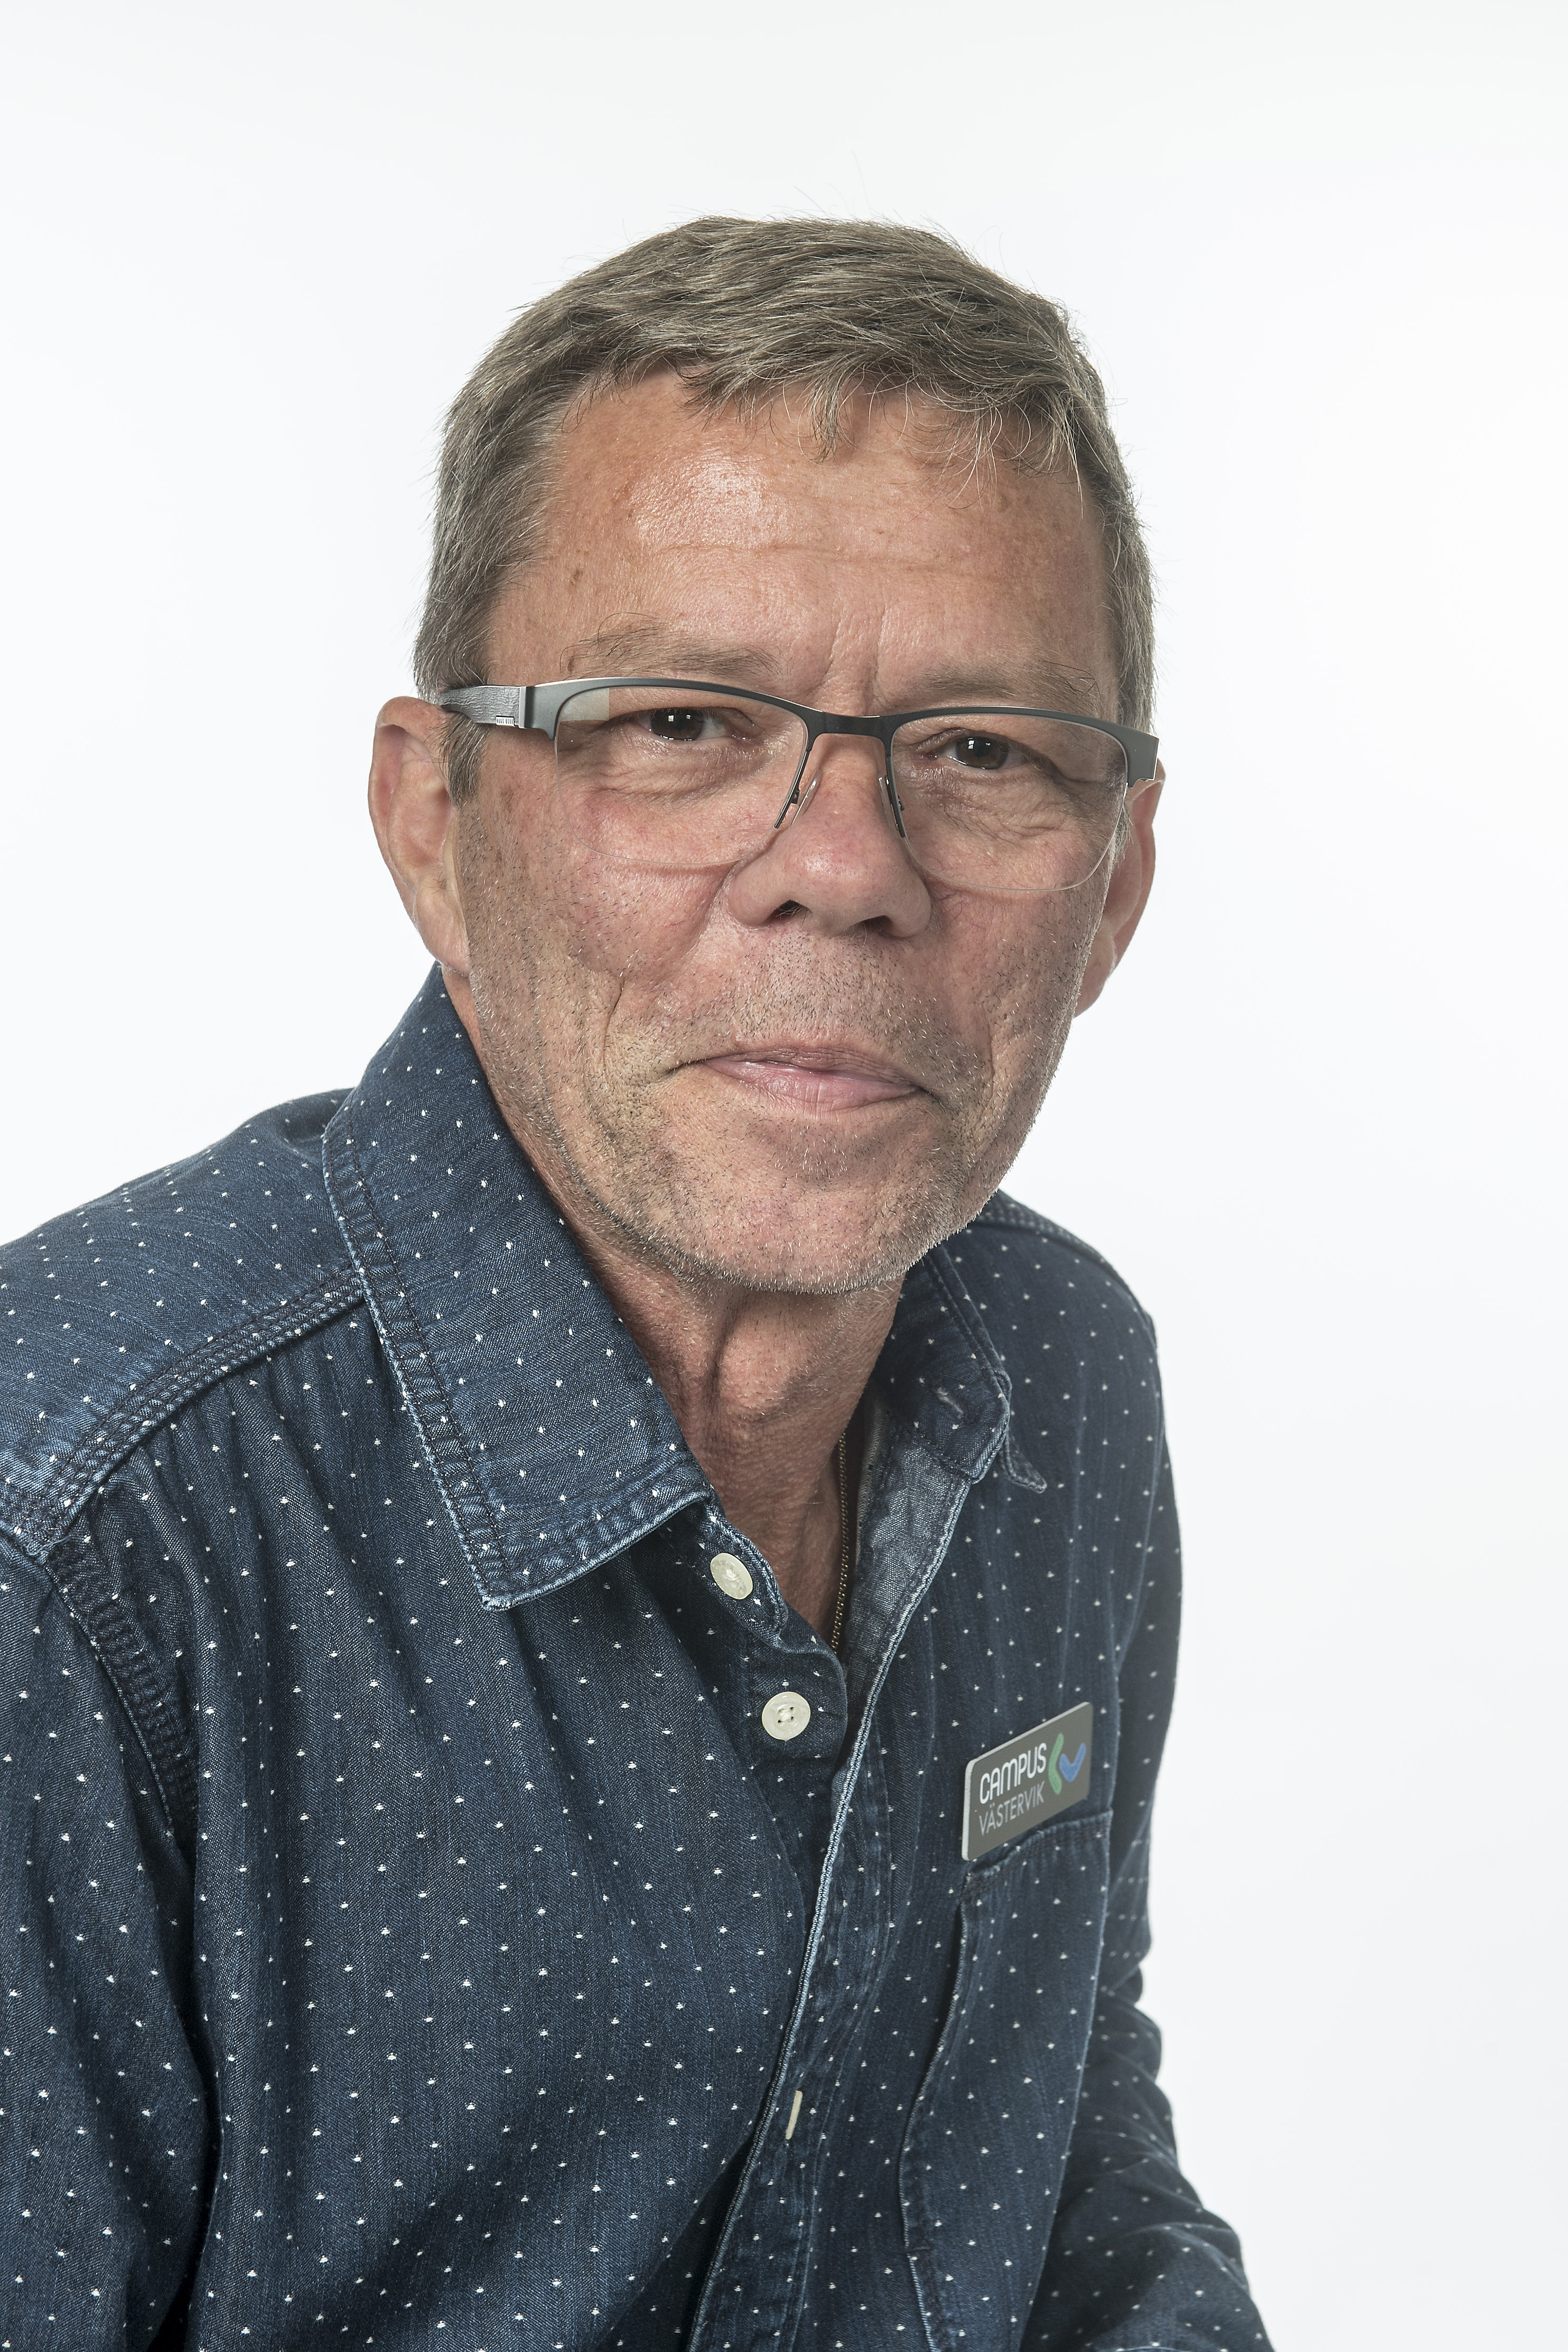 Jerry Engström